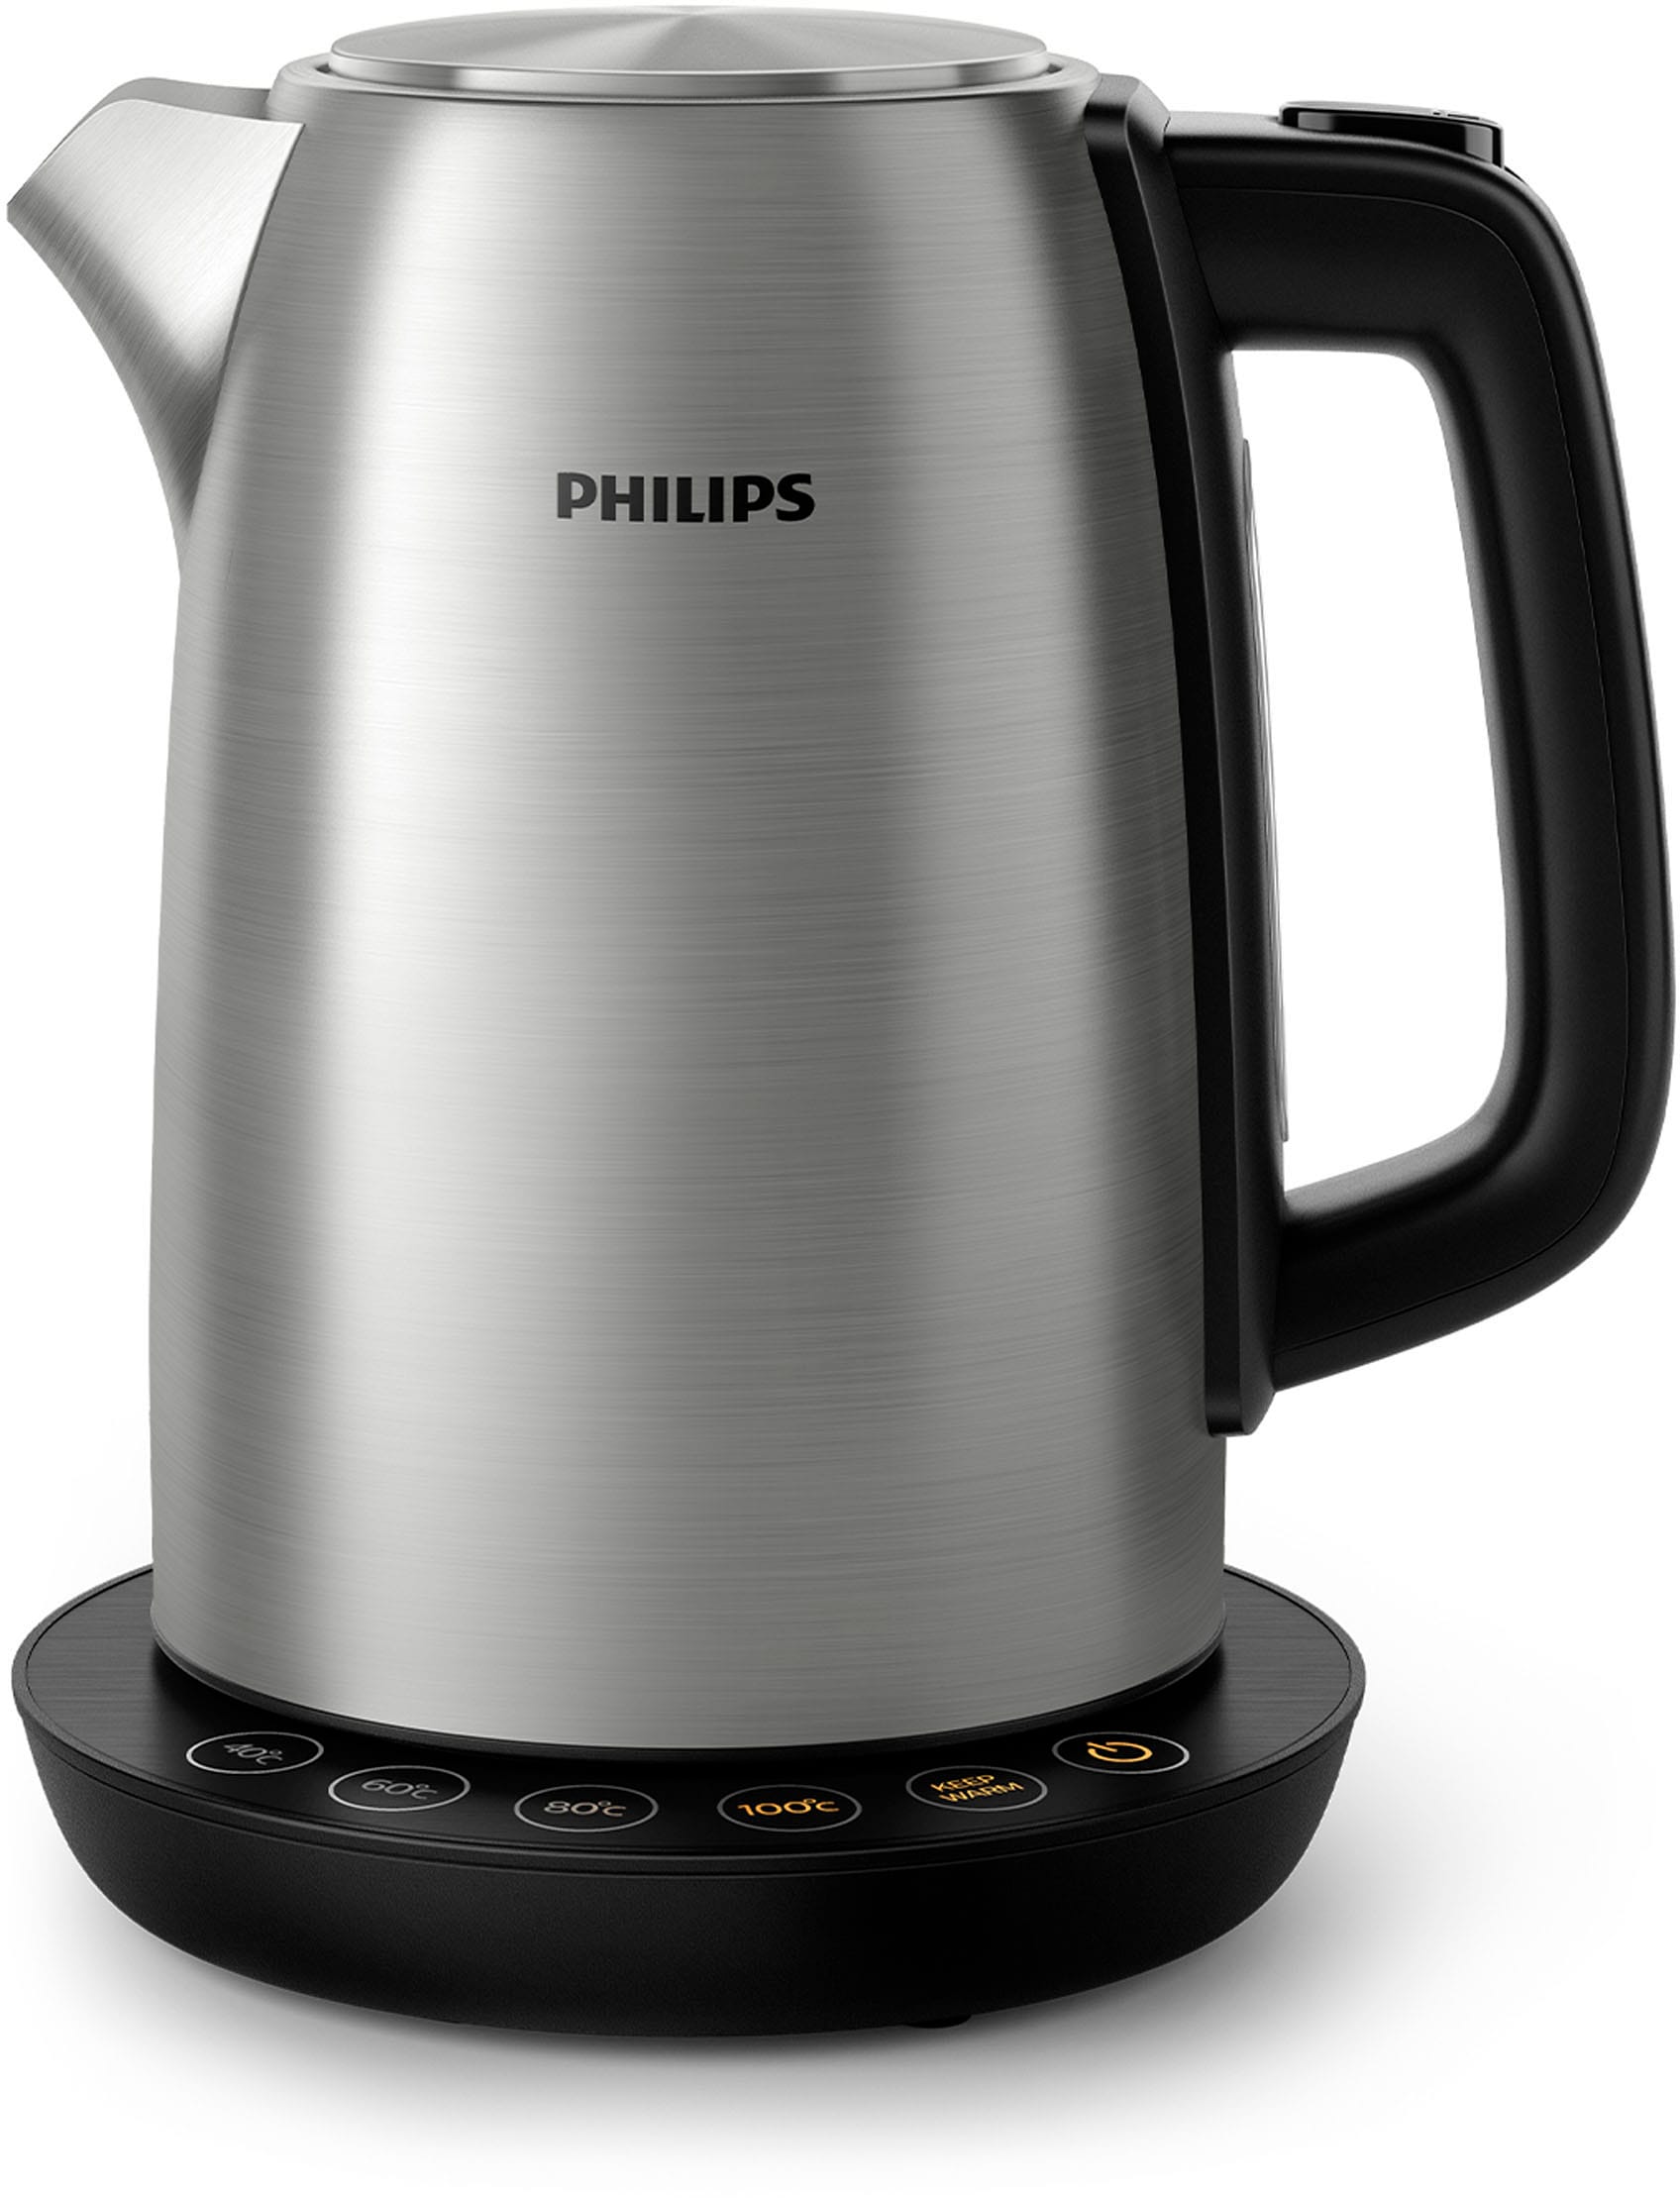 Philips Wasserkocher, HD9359/90, 1,7 Liter, 2200 Watt auf Raten kaufen